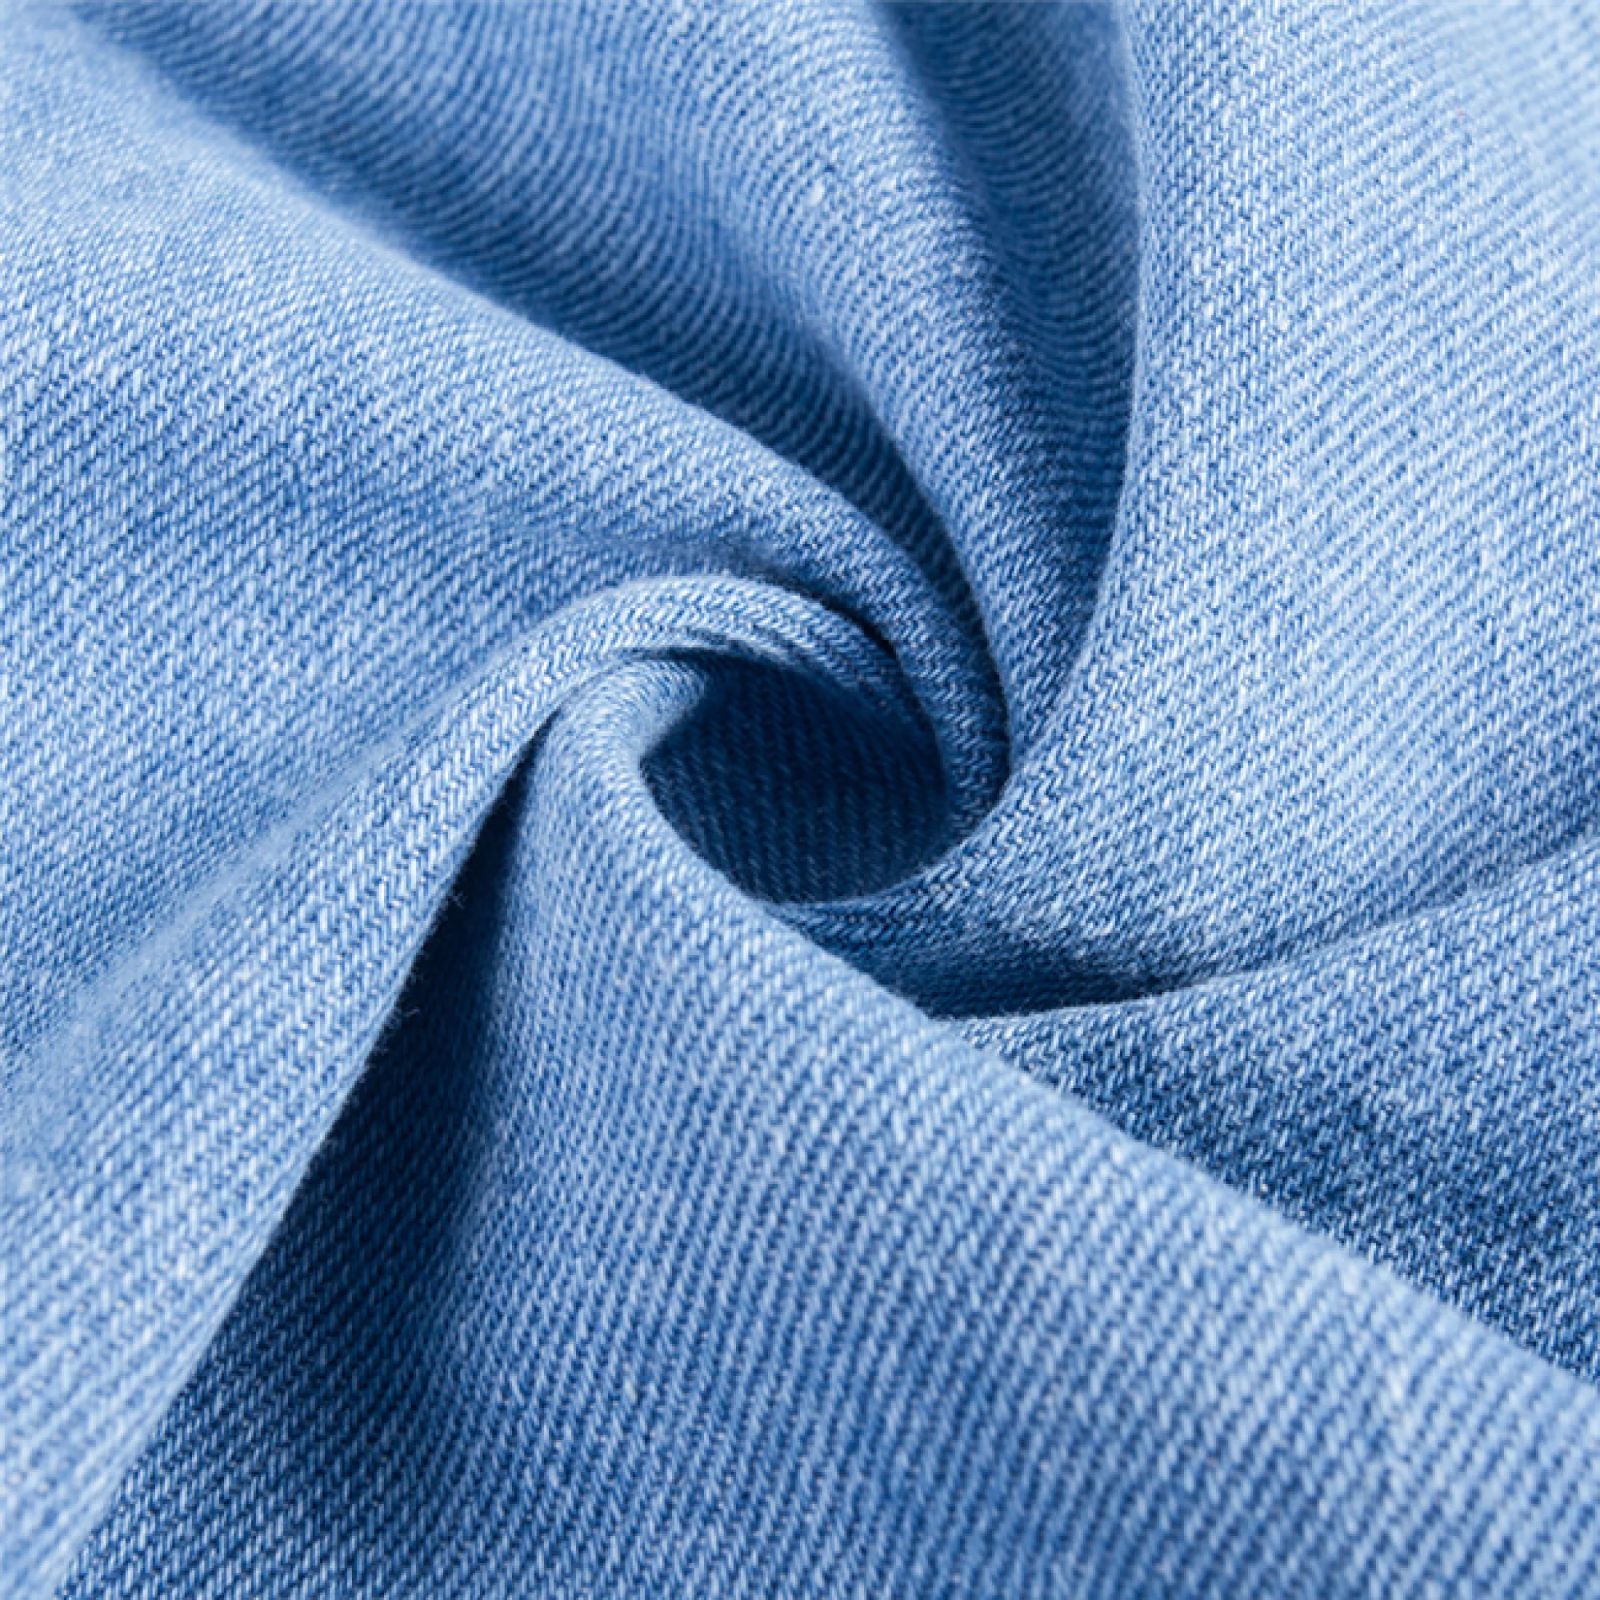 Vải denim, loại vải lâu đời trên thế giới, ứng dụng trong nhiều mục đích khác nhau (ảnh: Internet)